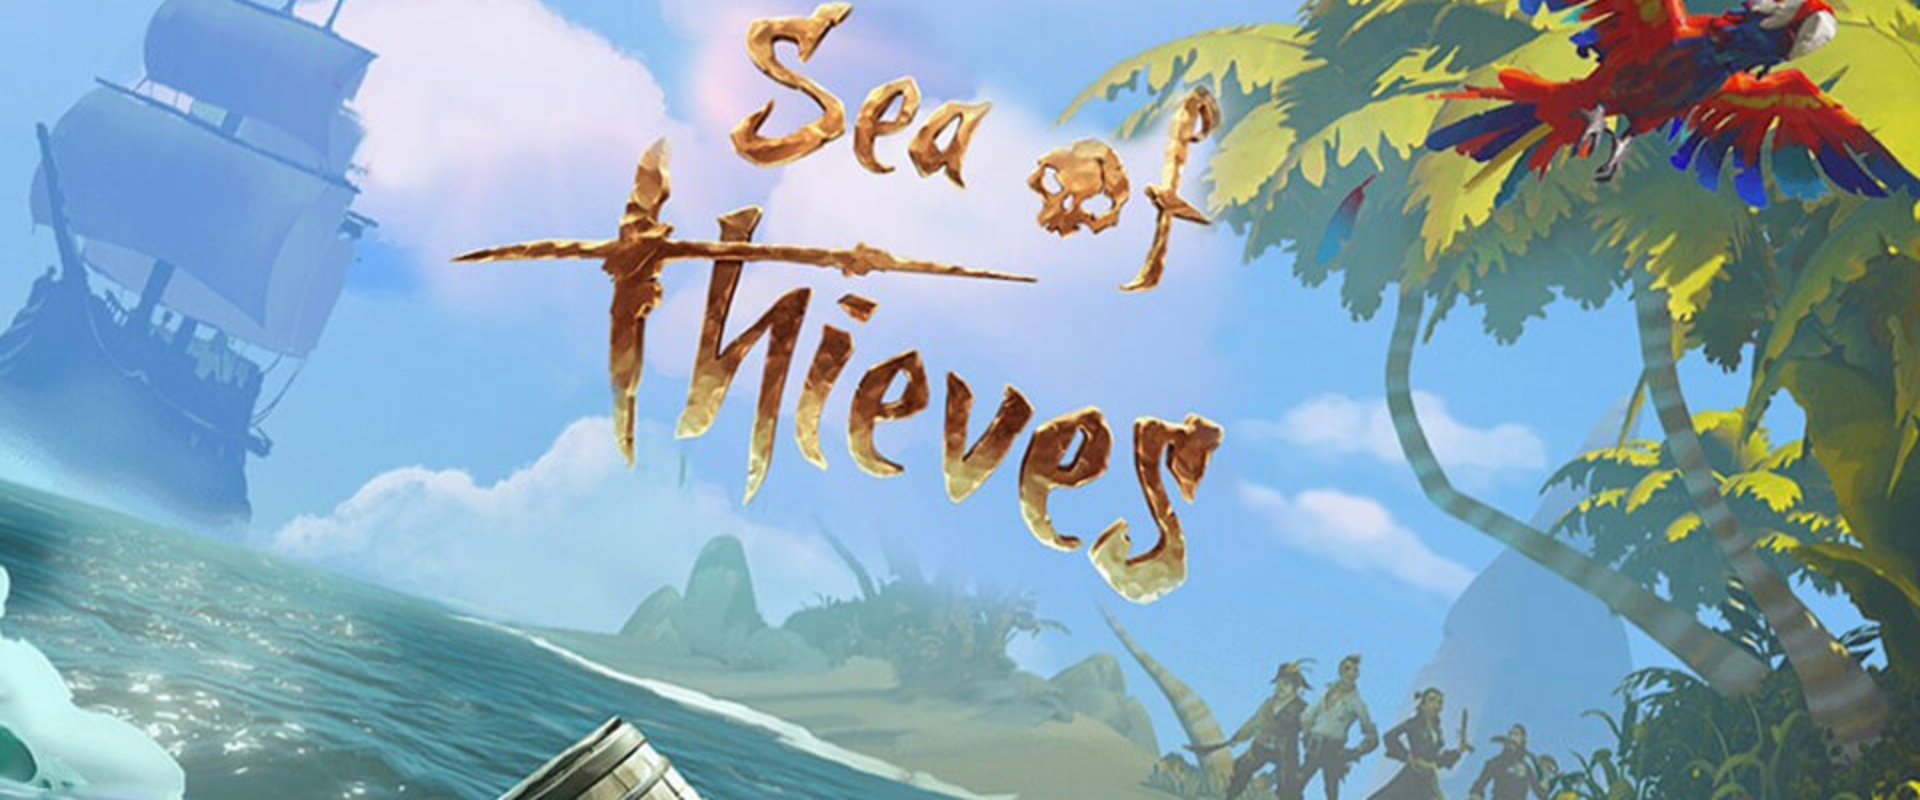 Sea of Thieves Patch 1.04 - Megérkeztek az első Pirate Legend cuccok